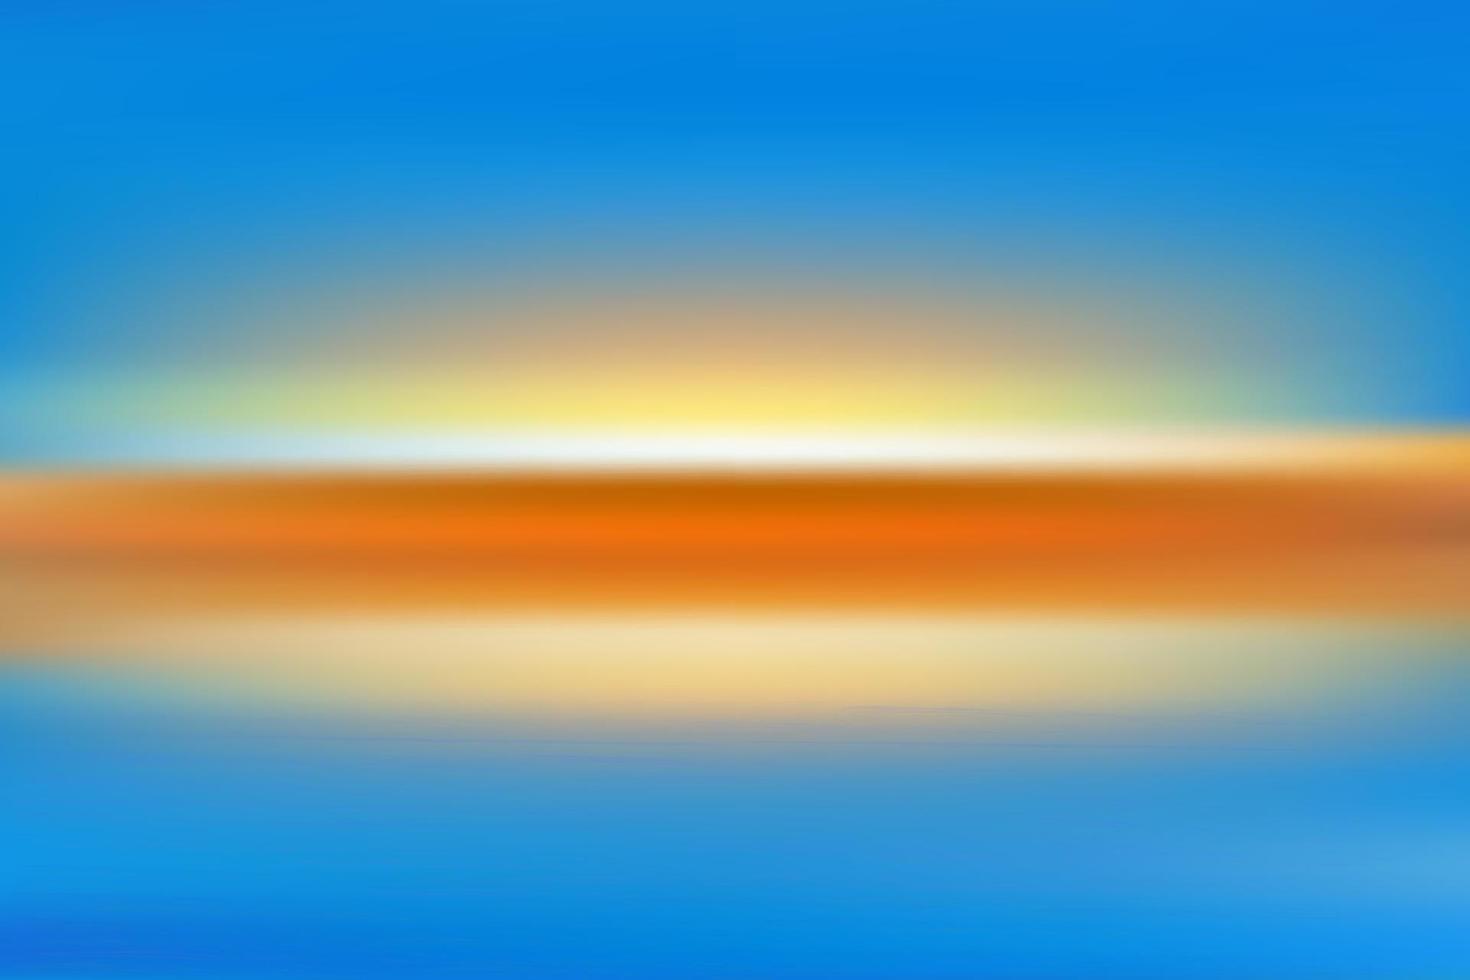 desenfoque de movimiento playa tropical al atardecer con un fondo de olas abstractas del océano bokeh luz del sol. Copie la sala de vacaciones de verano y el concepto de viajes de negocios. estilo de filtro de color de tono antiguo. vector